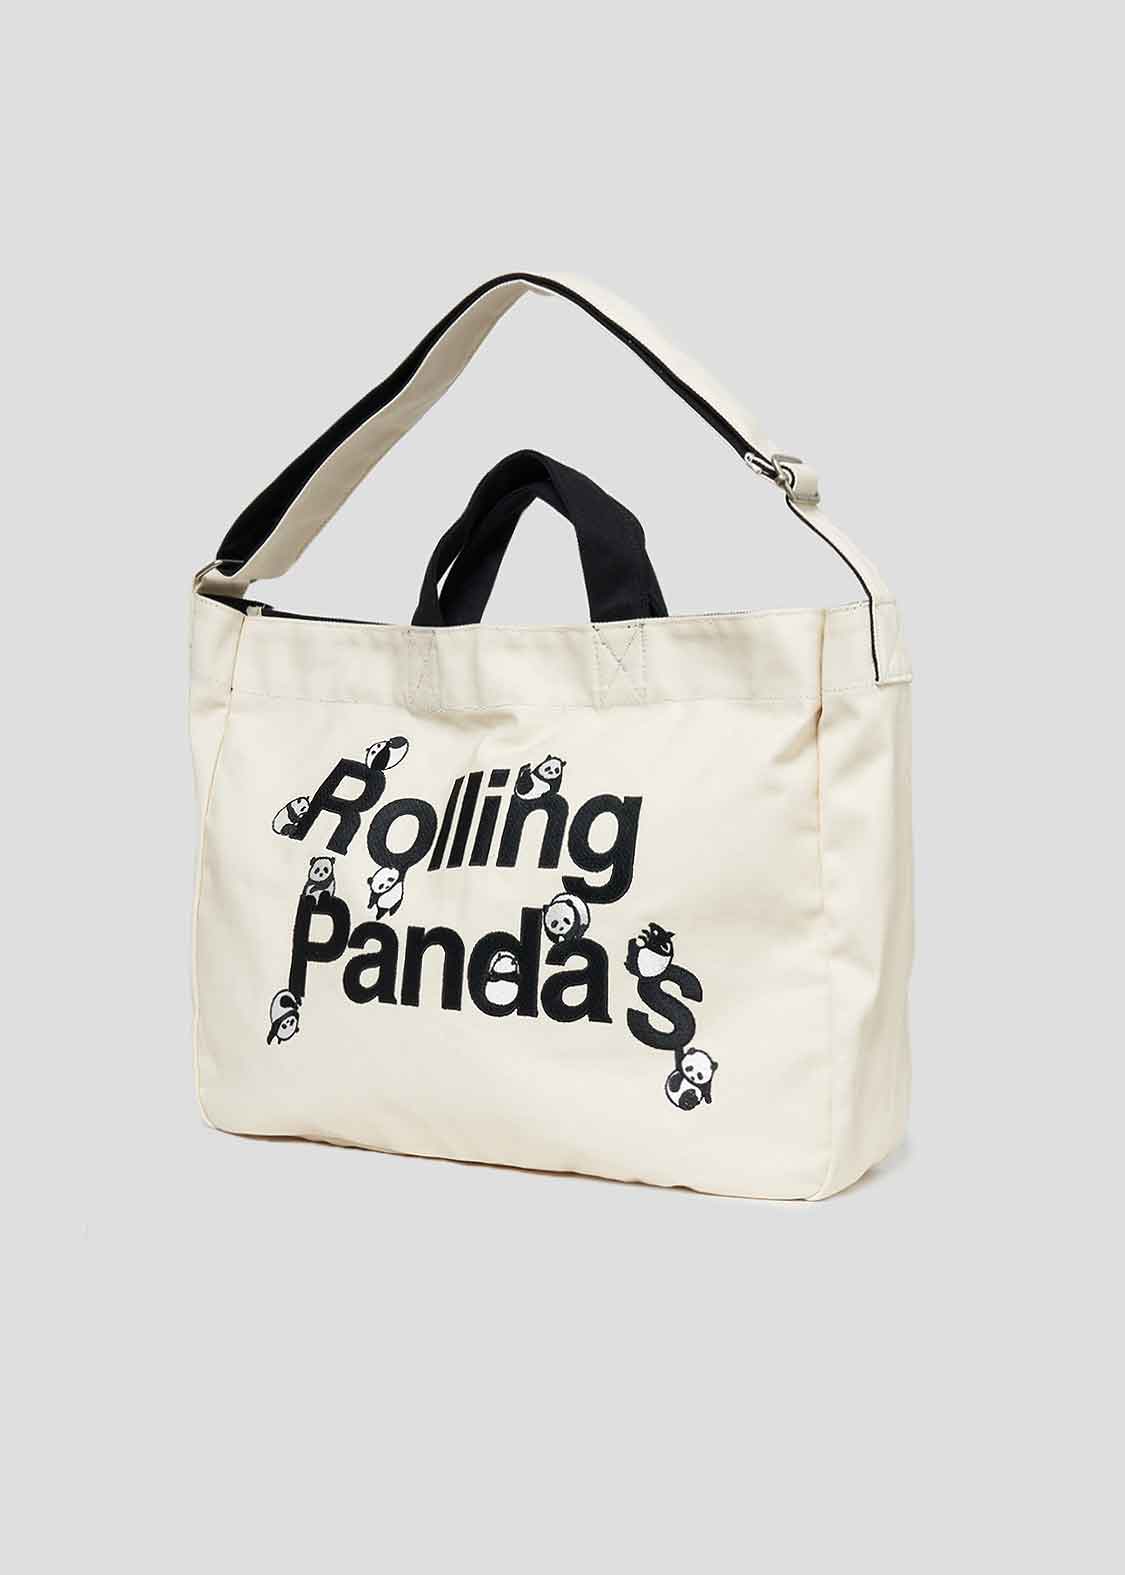 2 Way Tote Bag (Rolling Pandas)